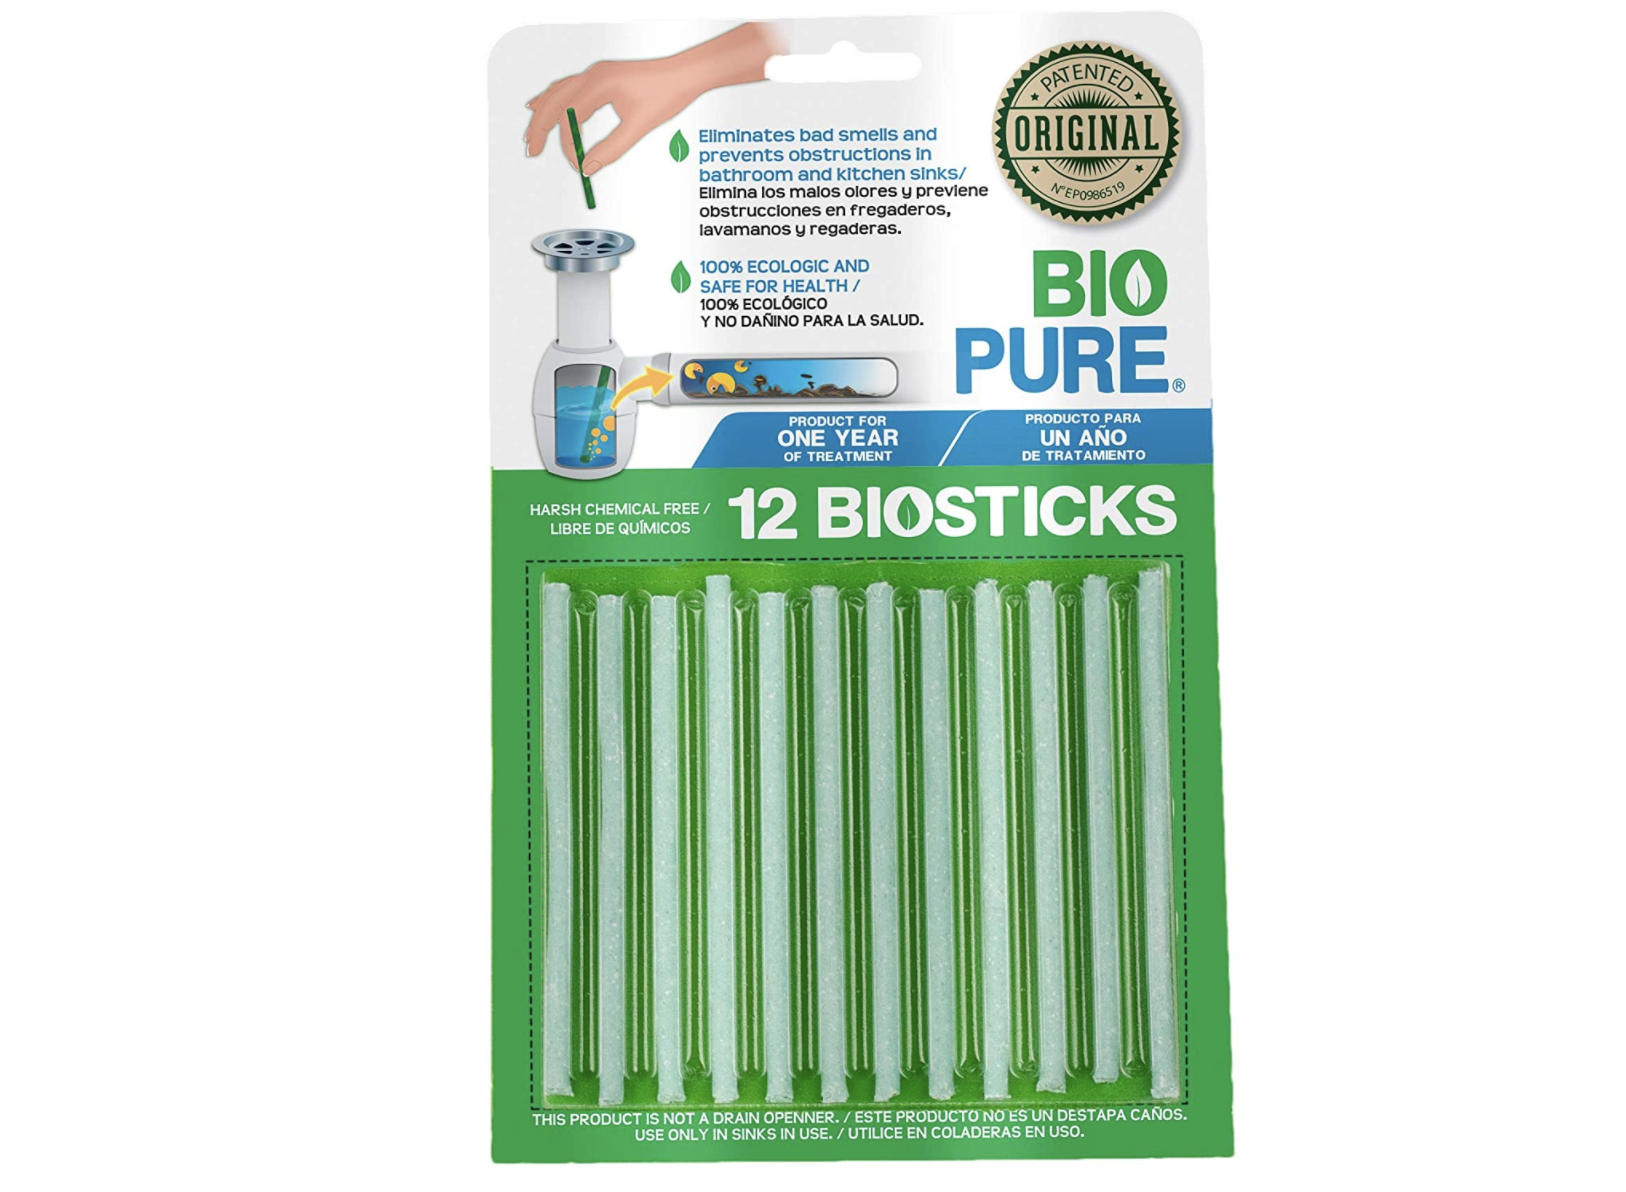 paquete con 12 bio sticks para quitar el mal olor de tuberías